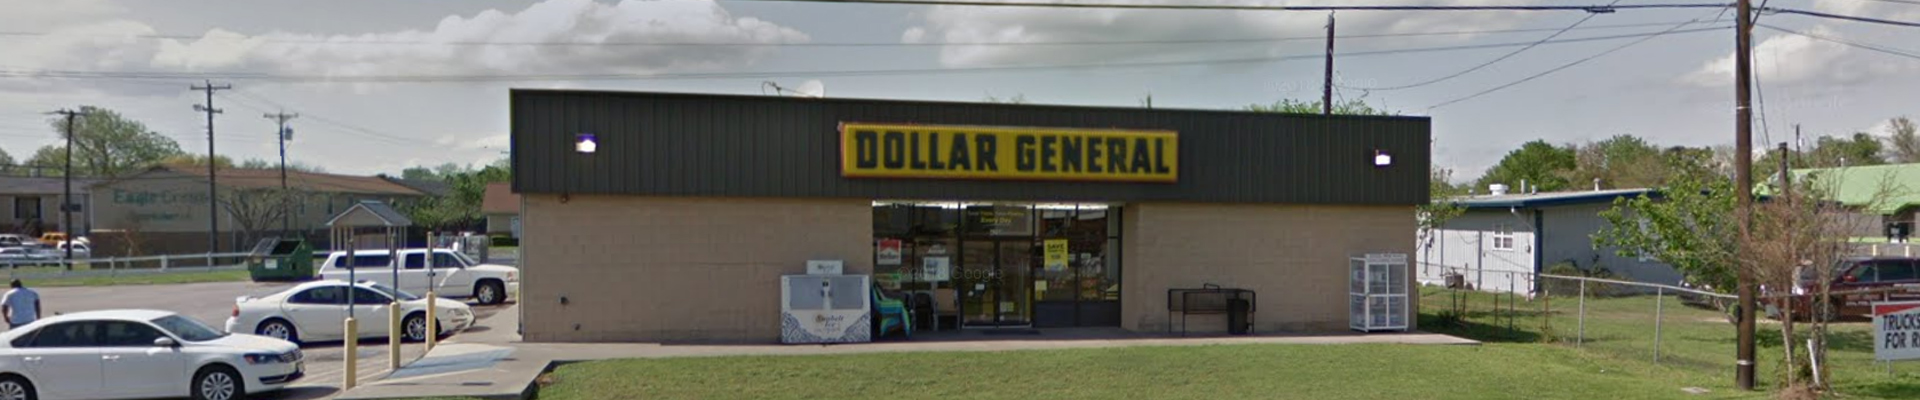 Dollar General (10175) – Waco, Texas